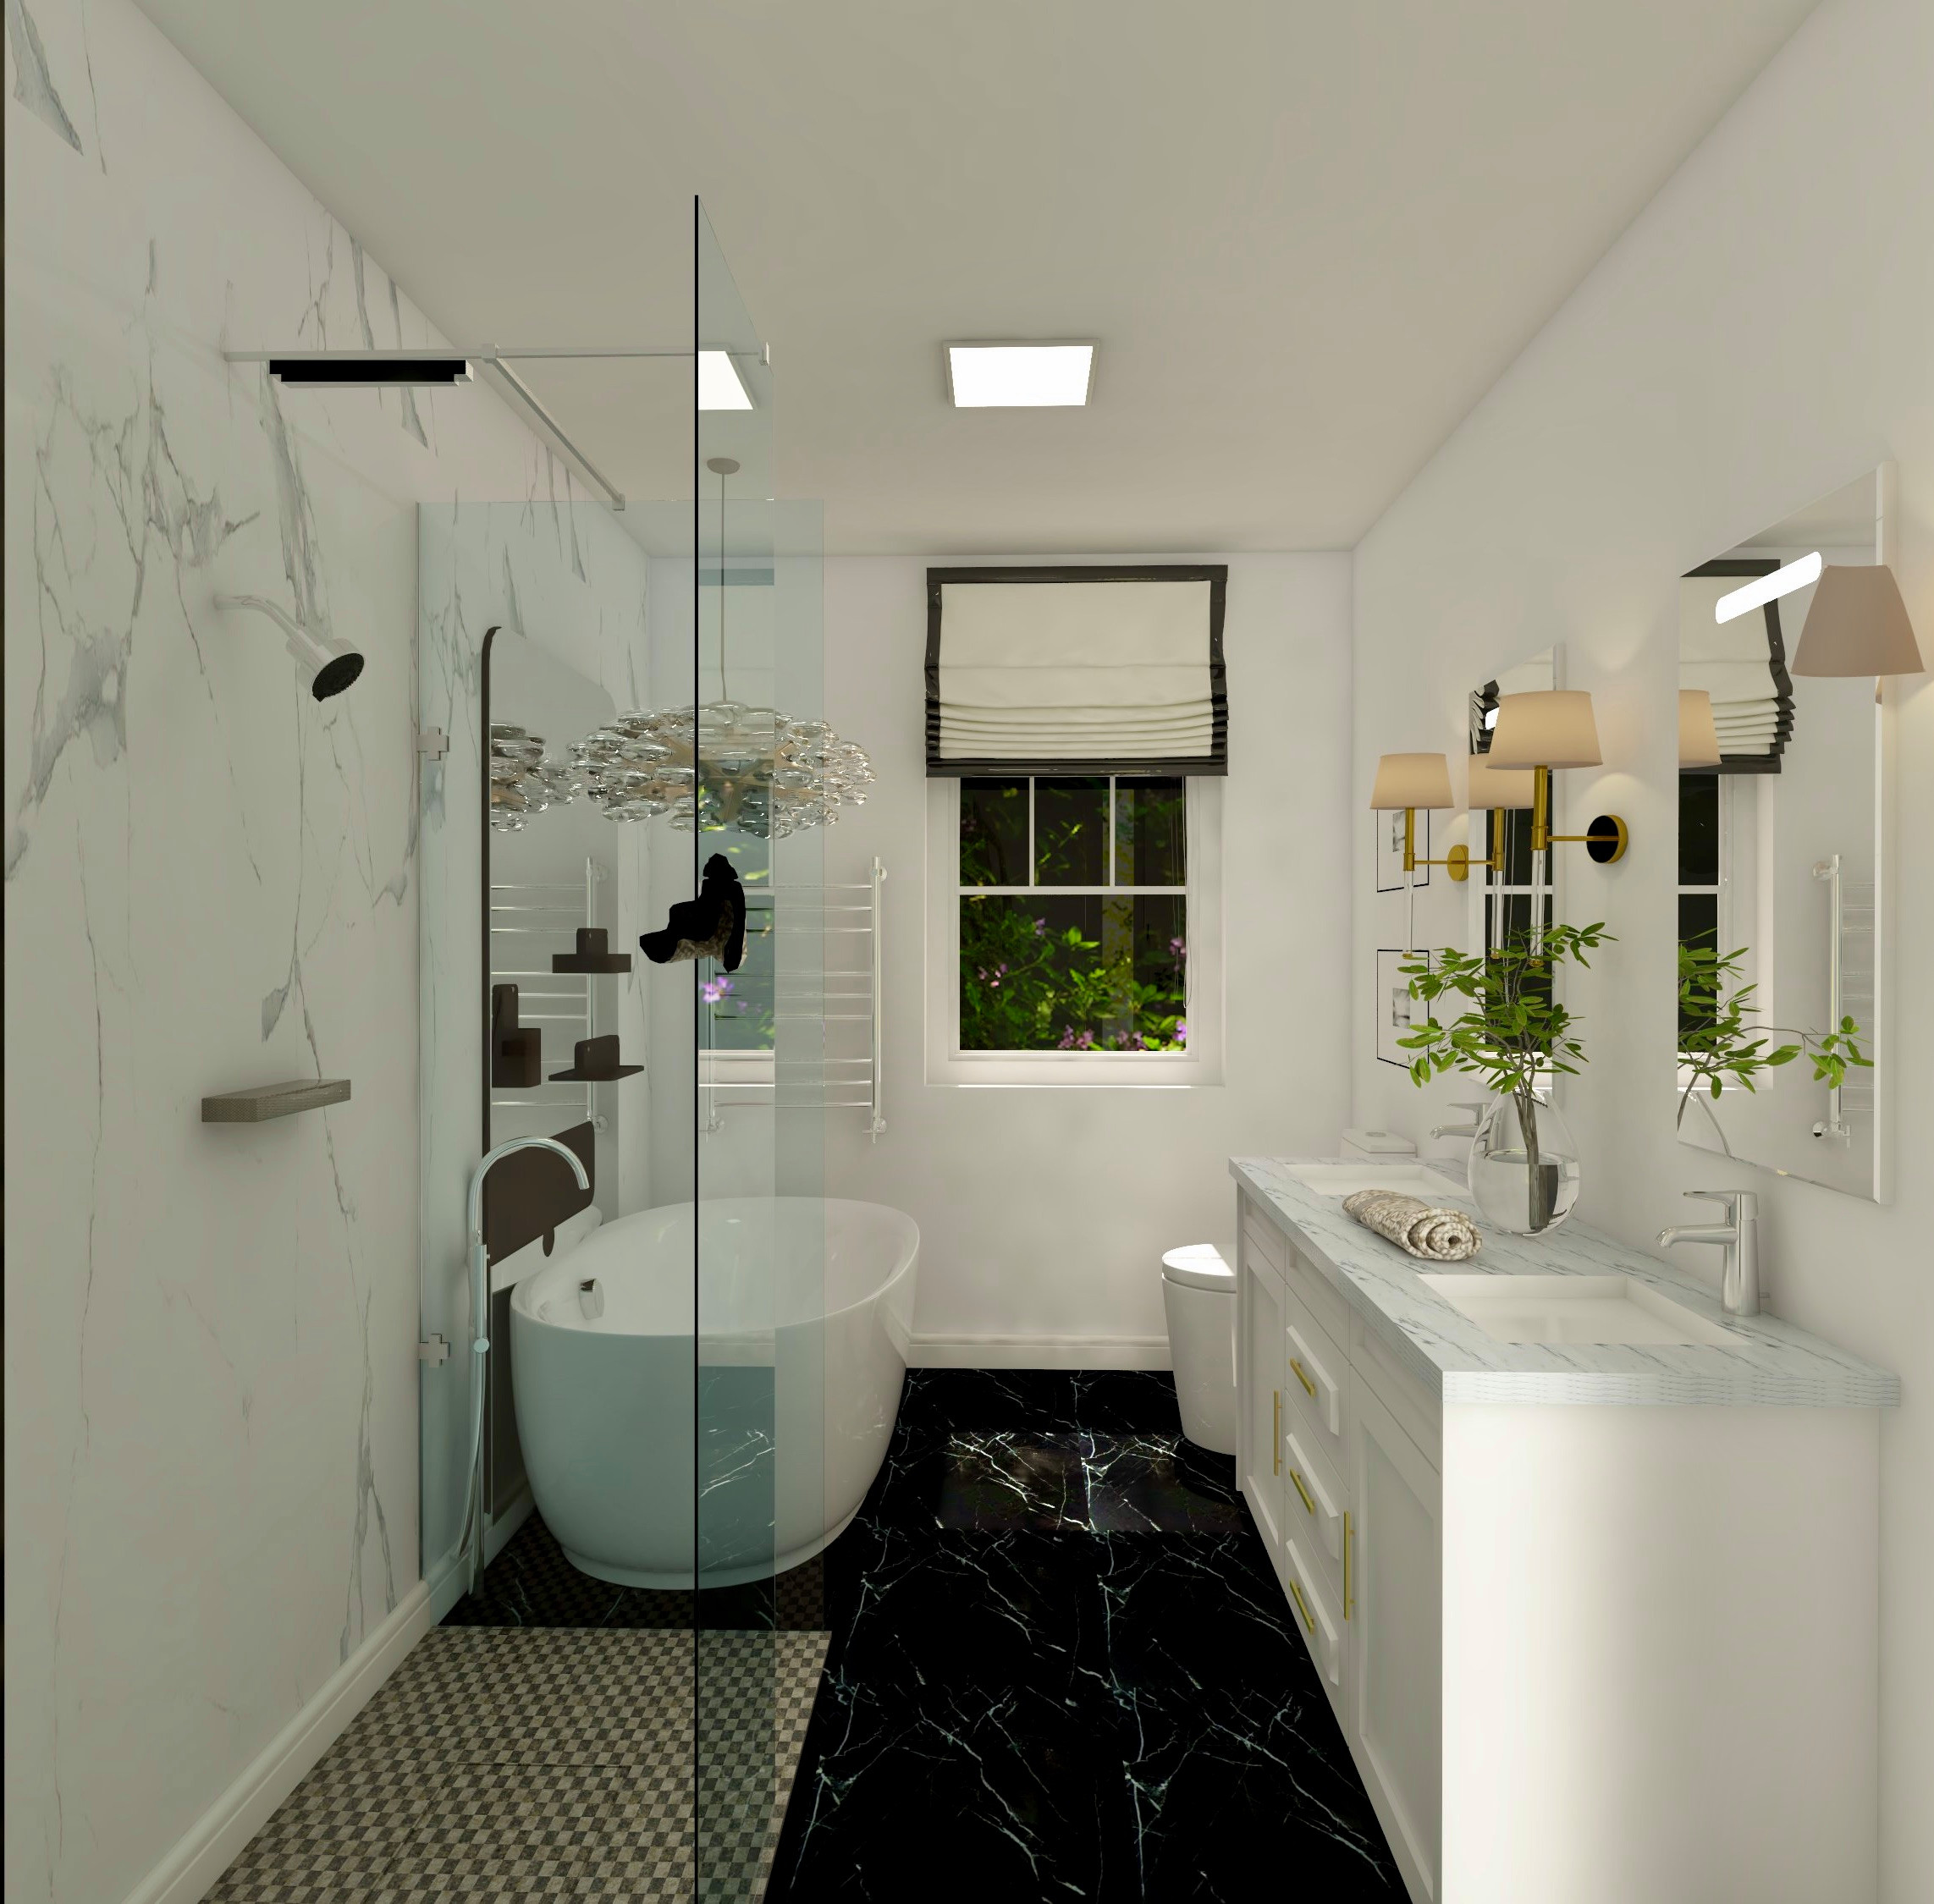 Digital Image and Design for Bathroom Remodel